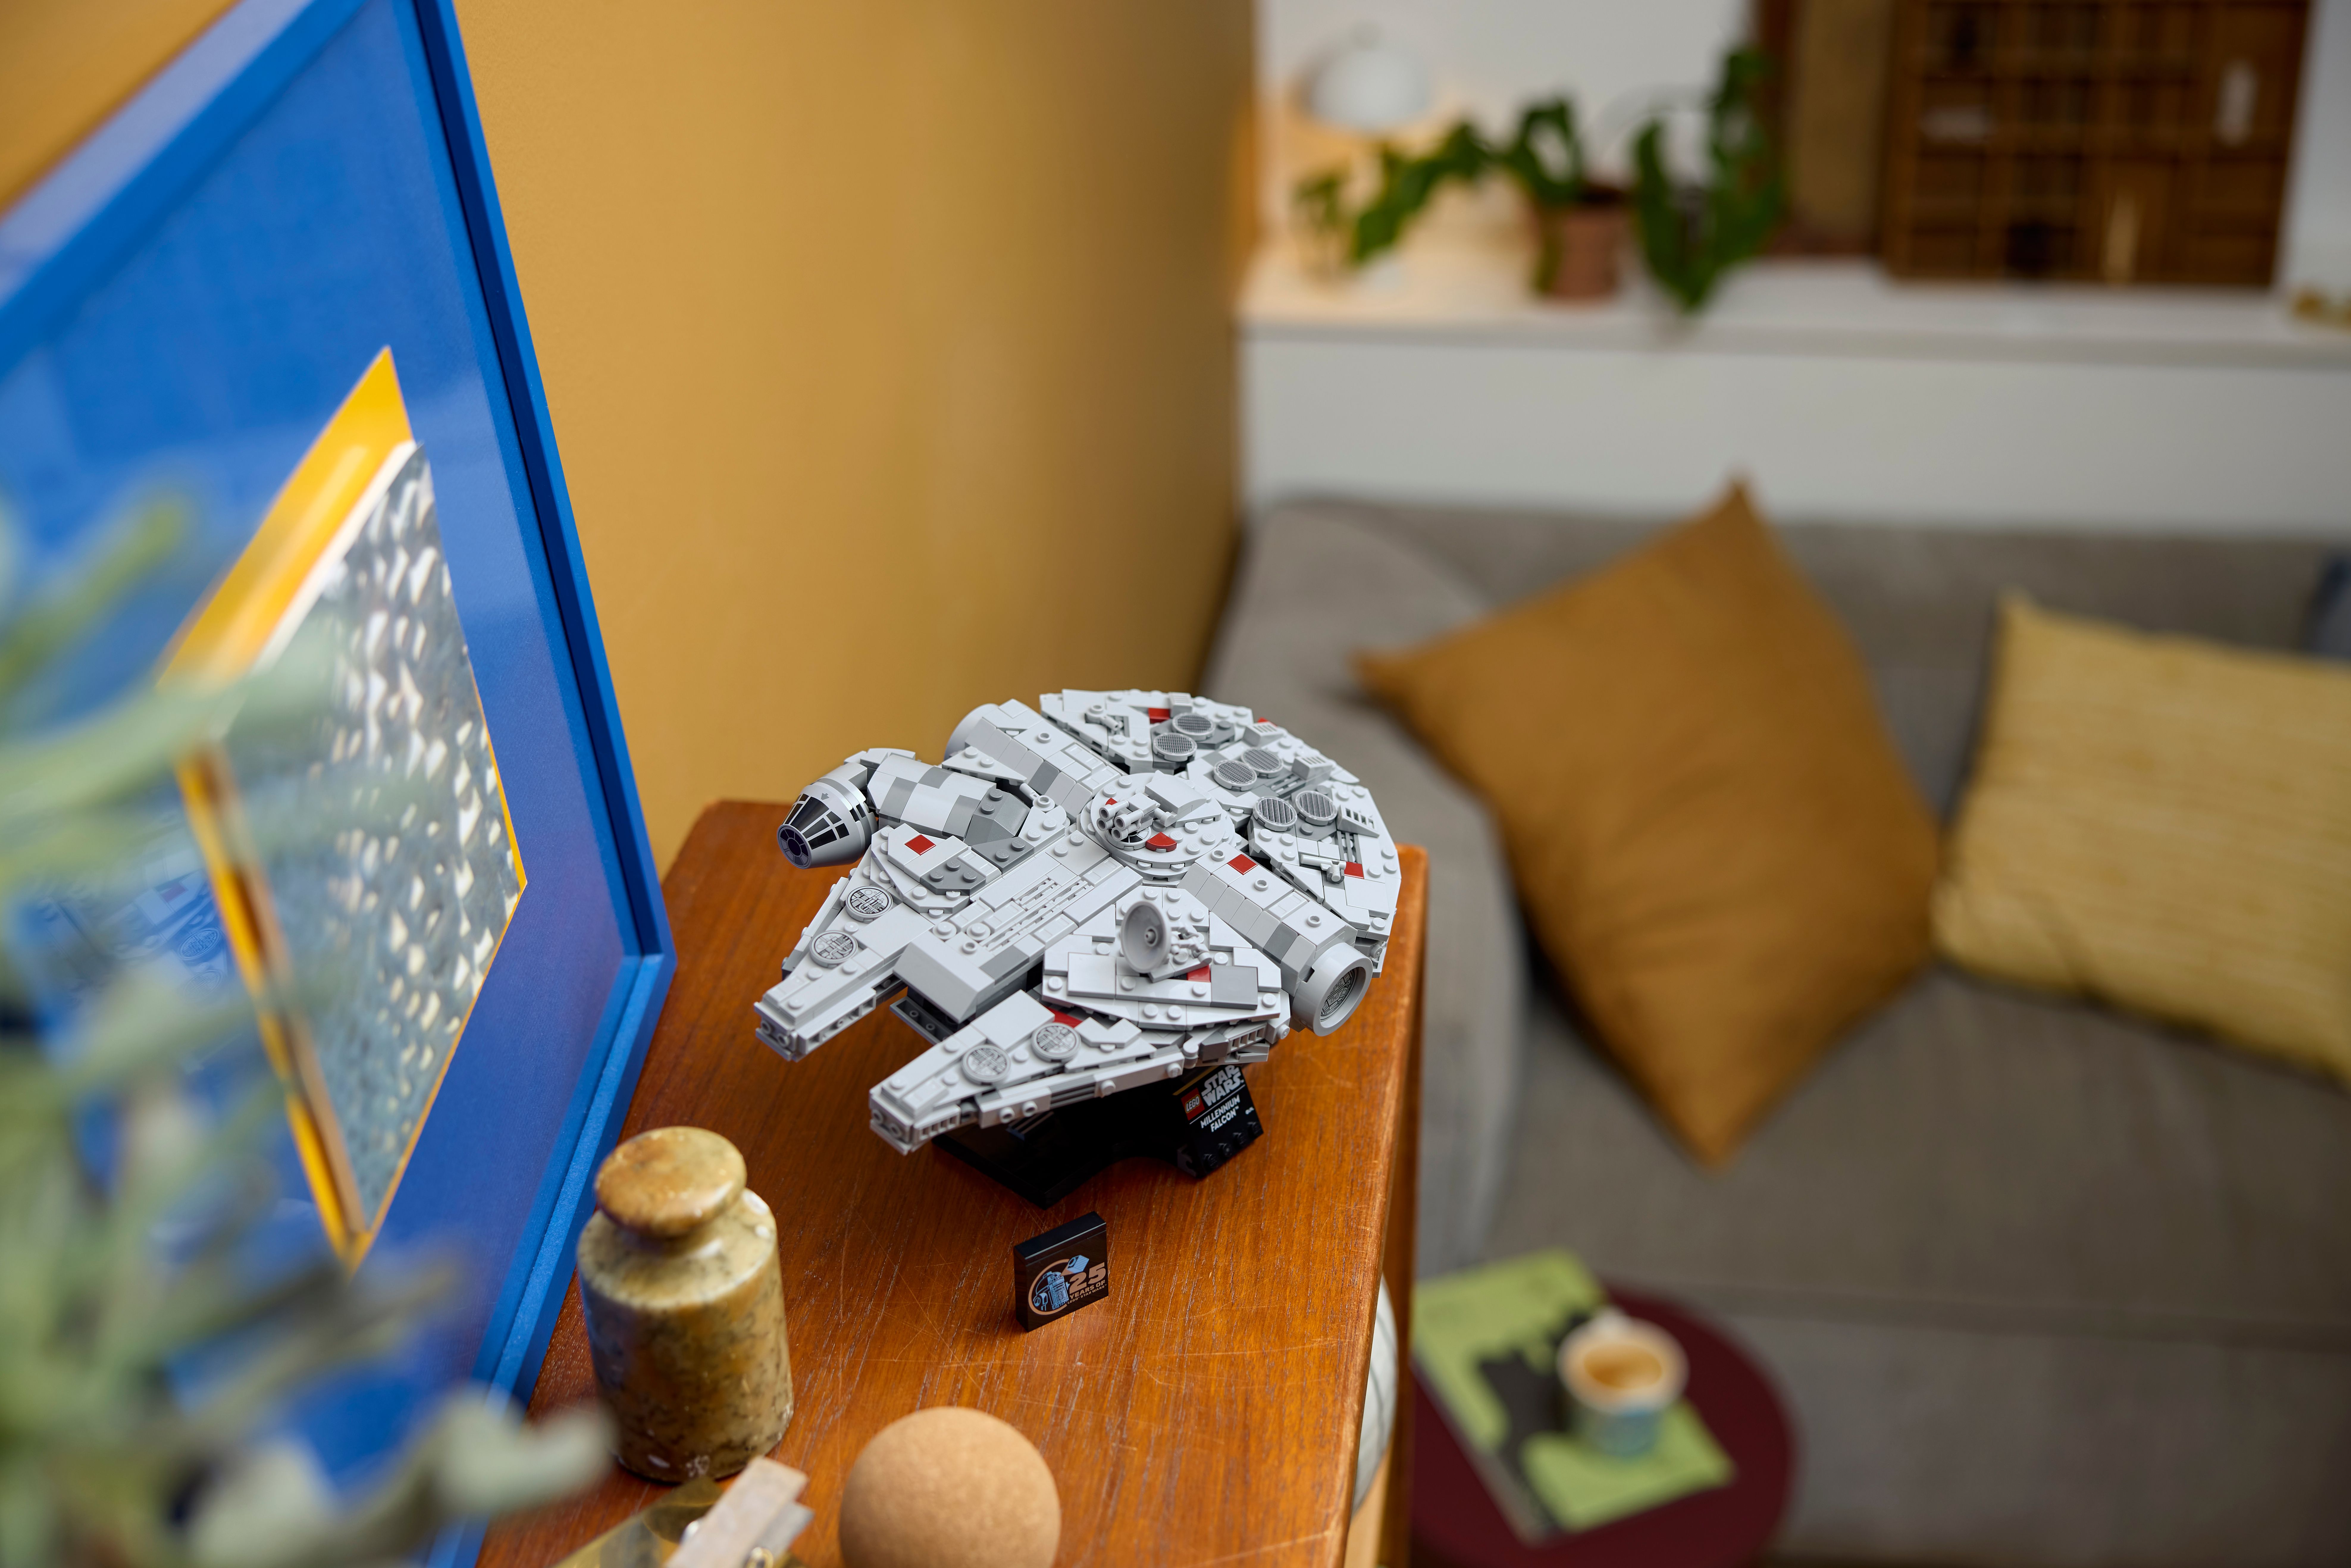 ▻ Nuovi prodotti LEGO Star Wars 2024: disponibili alcune visual ufficiali -  HOTH BRICKS